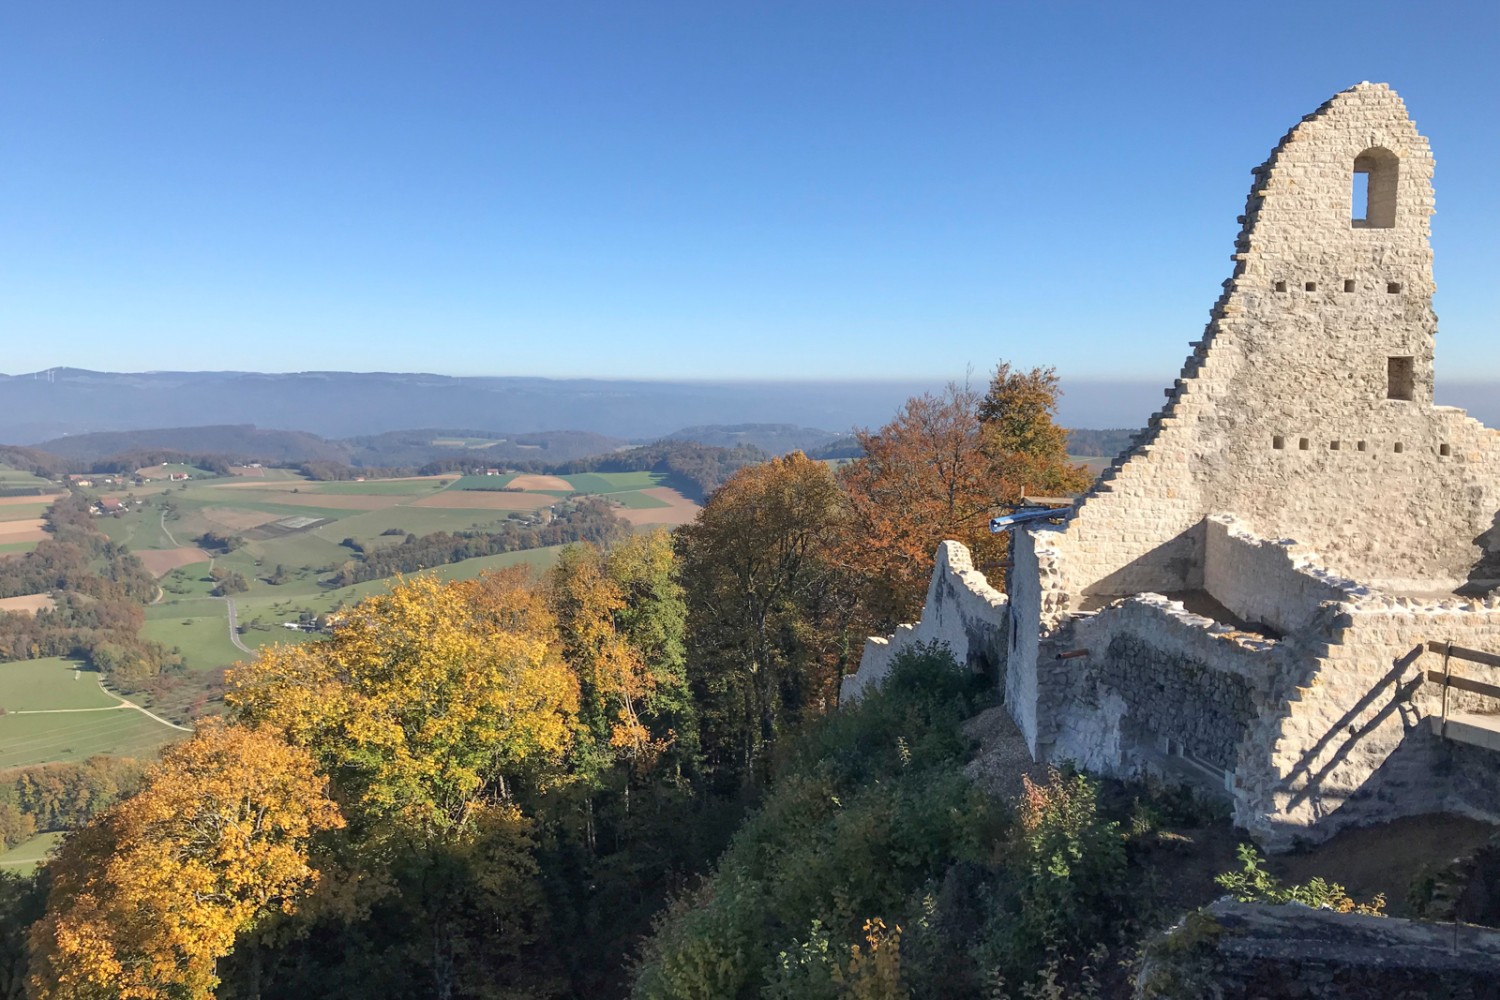 Ob herangaloppierende Burgritter oder einfach sanfte Hügel – was man von der Burgruine aus sieht, liegt im Auge des Betrachters. Bild: Ulrike Marx 